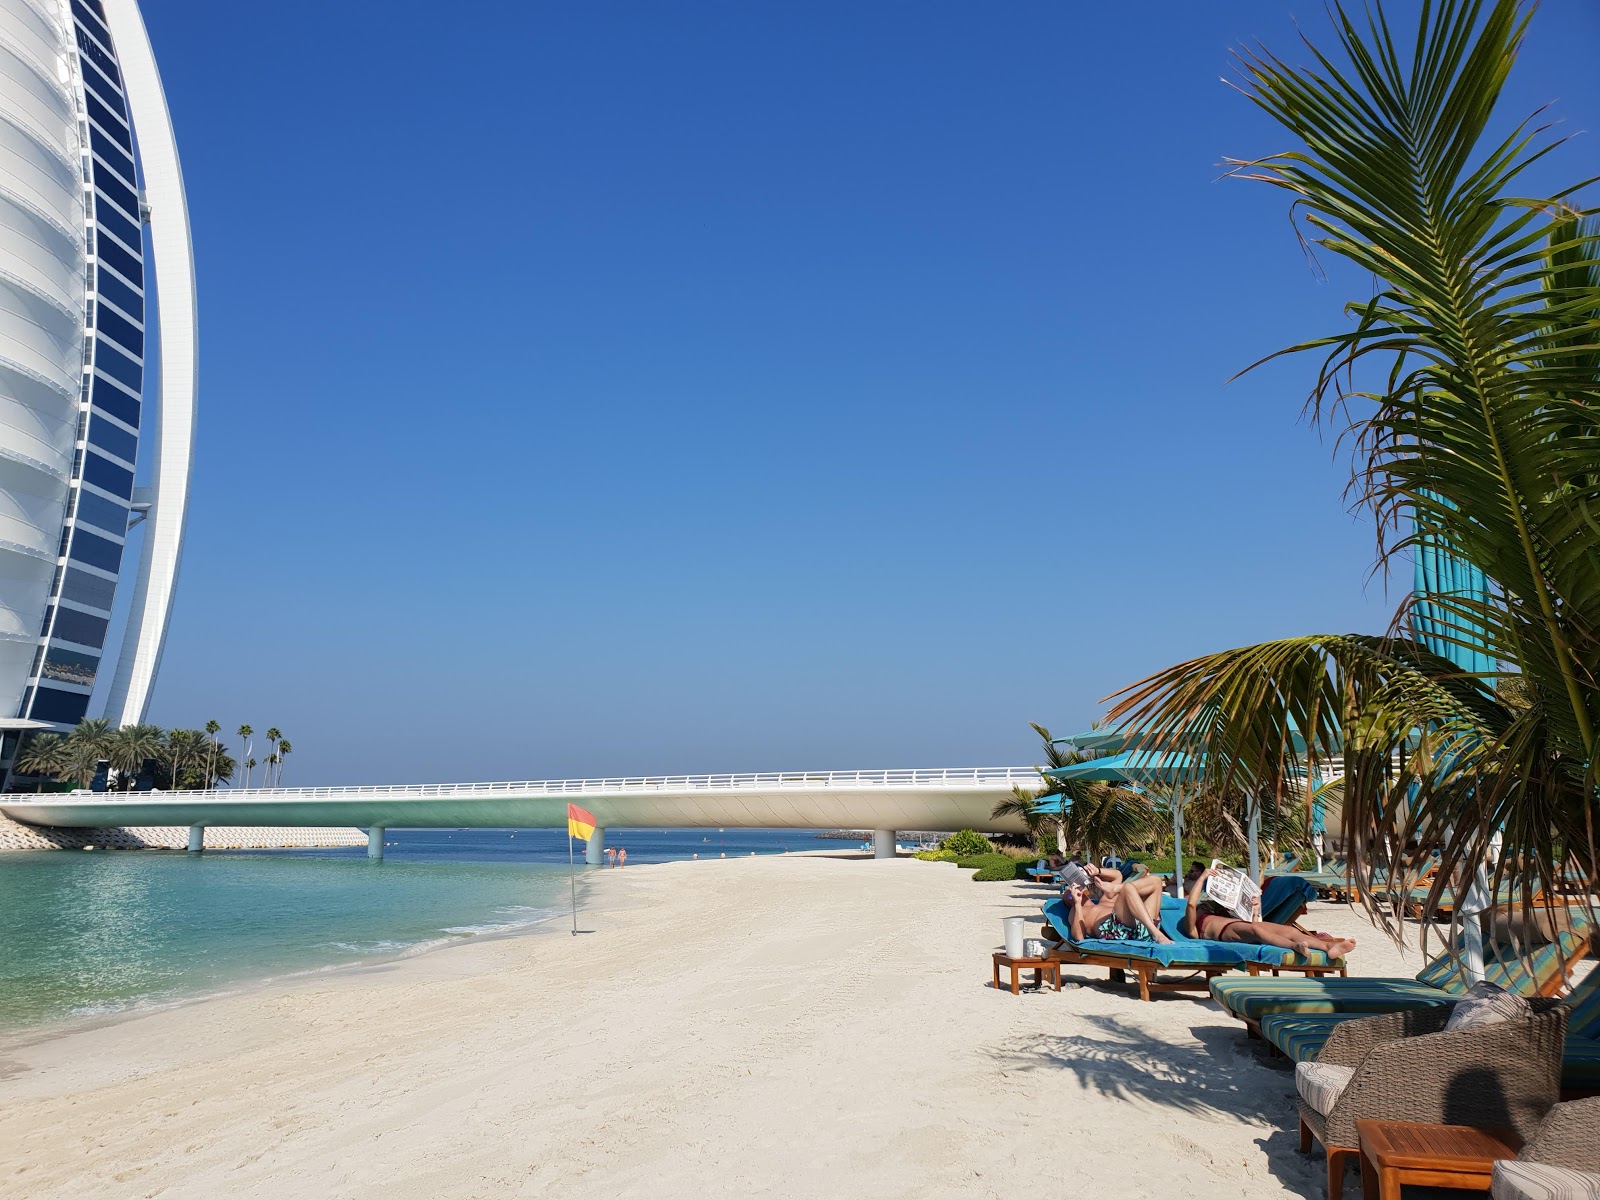 Foto de Playa del Océano - lugar popular entre los conocedores del relax